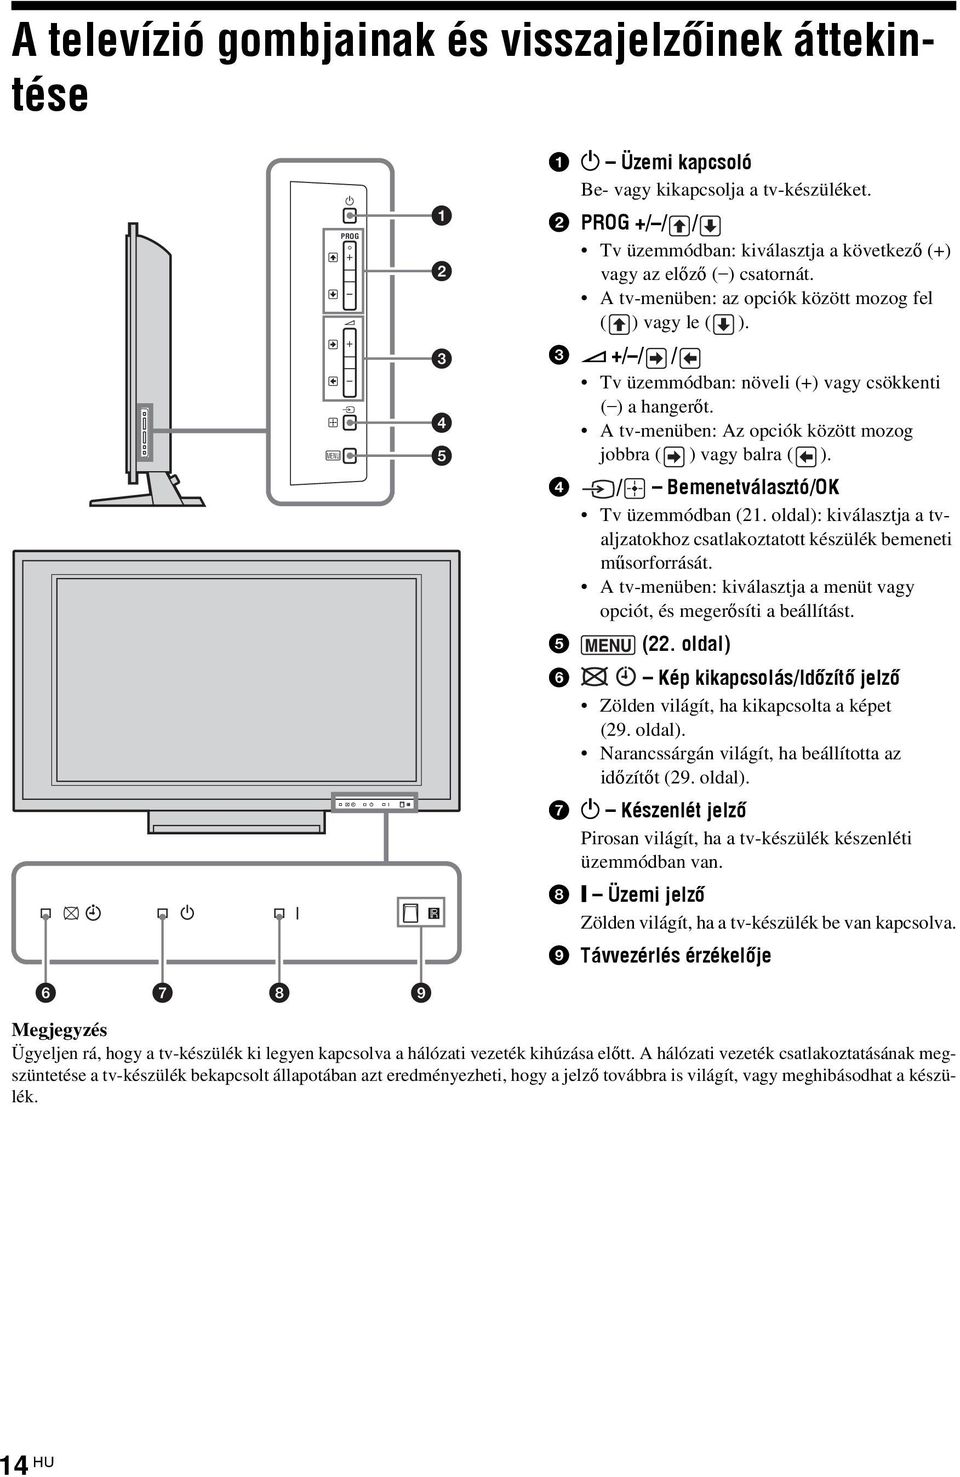 3 2 +/ / / Tv üzemmódban: növeli (+) vagy csökkenti ( ) a hangerőt. A tv-menüben: Az opciók között mozog jobbra ( ) vagy balra ( ). 4 / Bemenetválasztó/OK Tv üzemmódban (21.